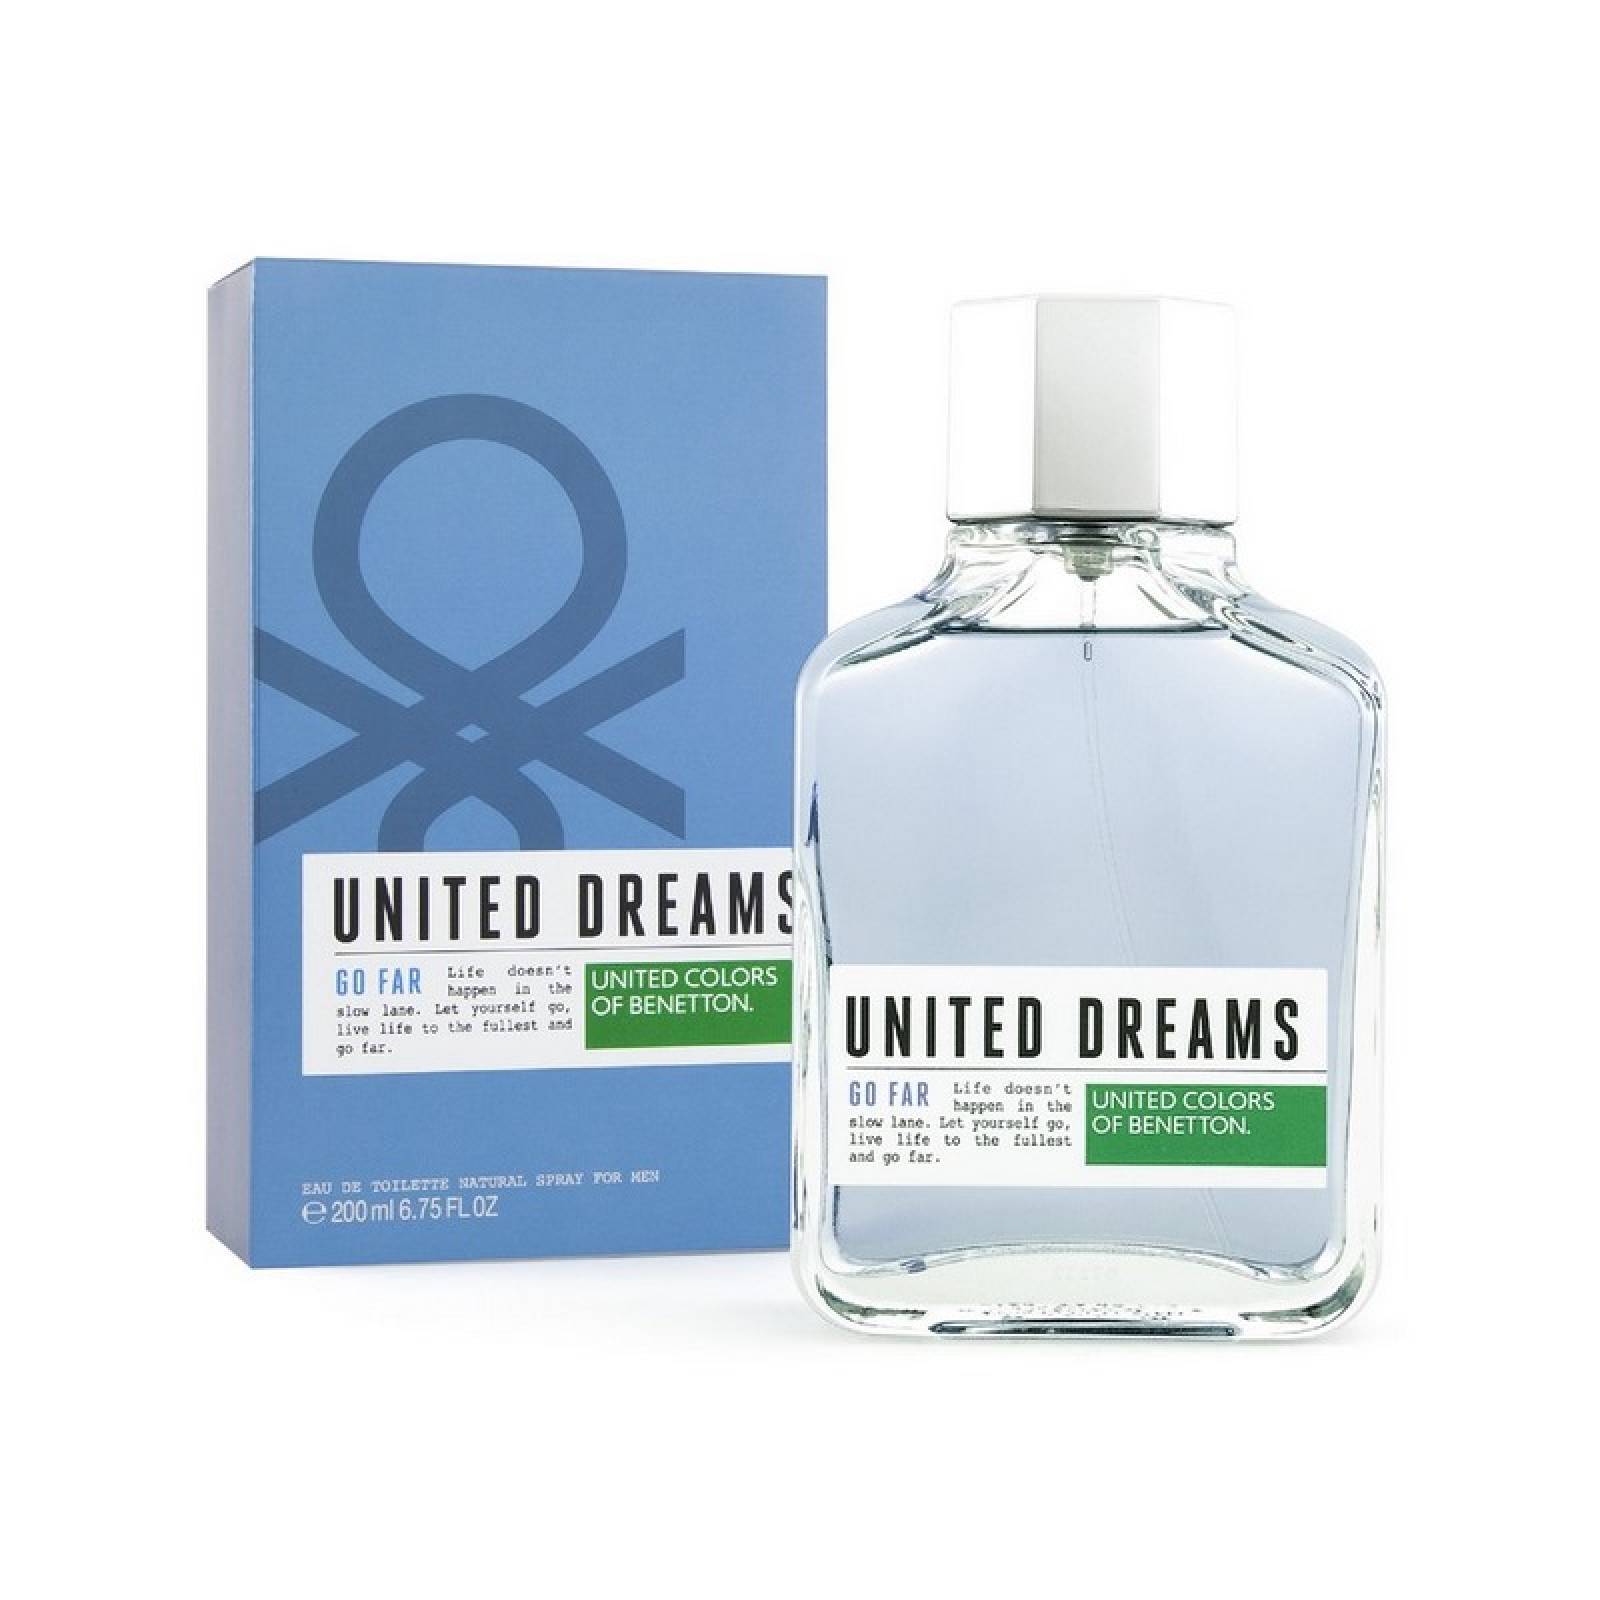 United Dreams Go Far 200 ml Edt Spray de Benetton